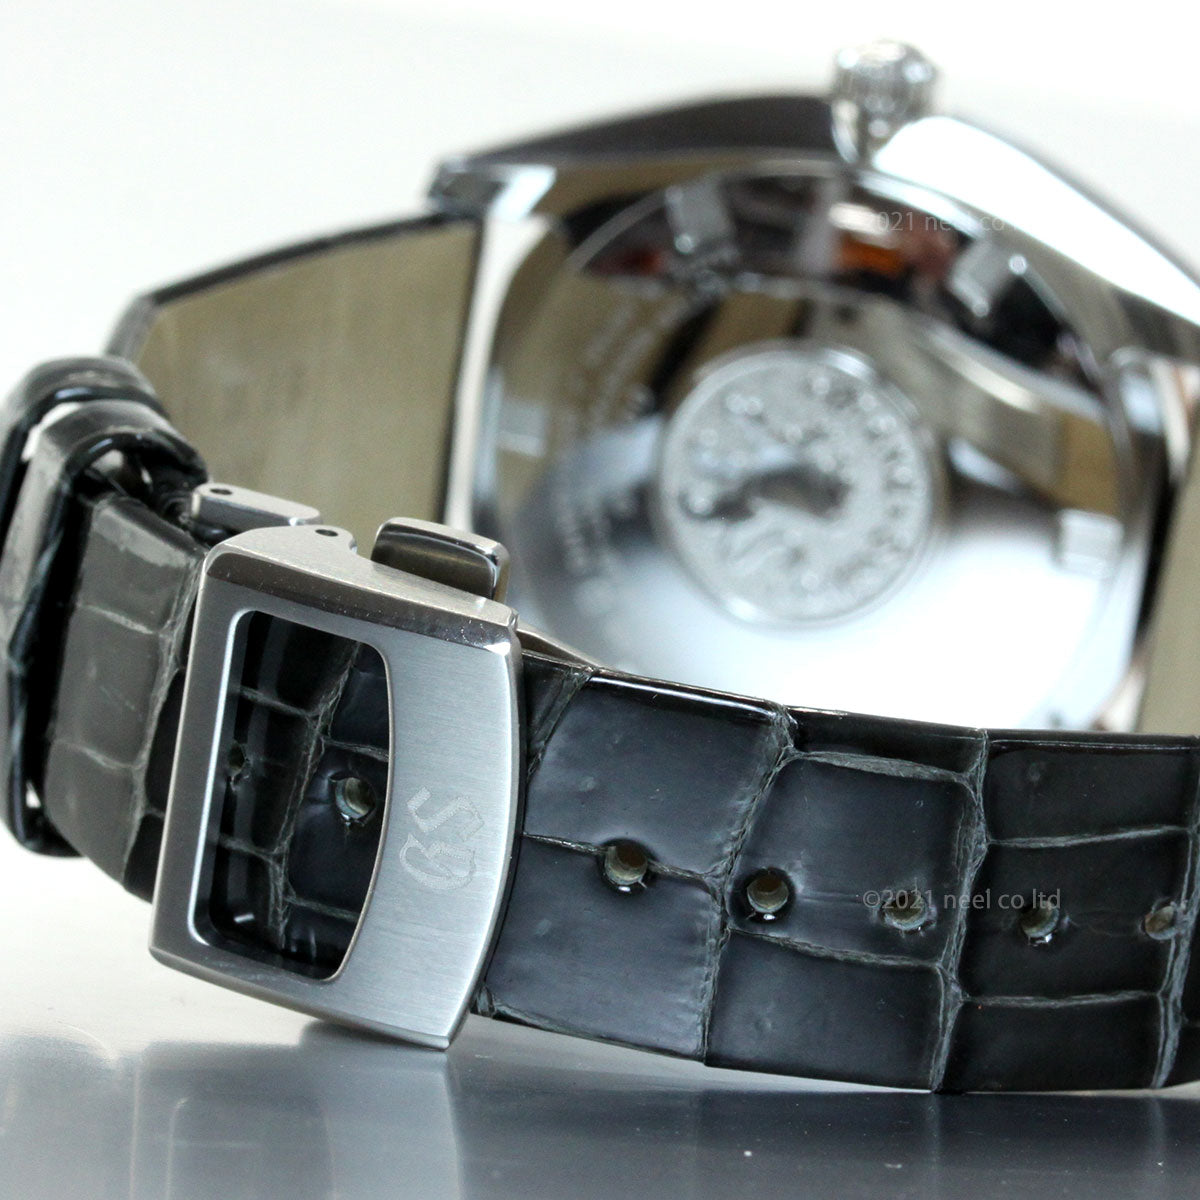 【36回分割手数料無料！】グランドセイコー GRAND SEIKO 腕時計 ペアモデル メンズ エレガンス Elegance Collection SBGX344